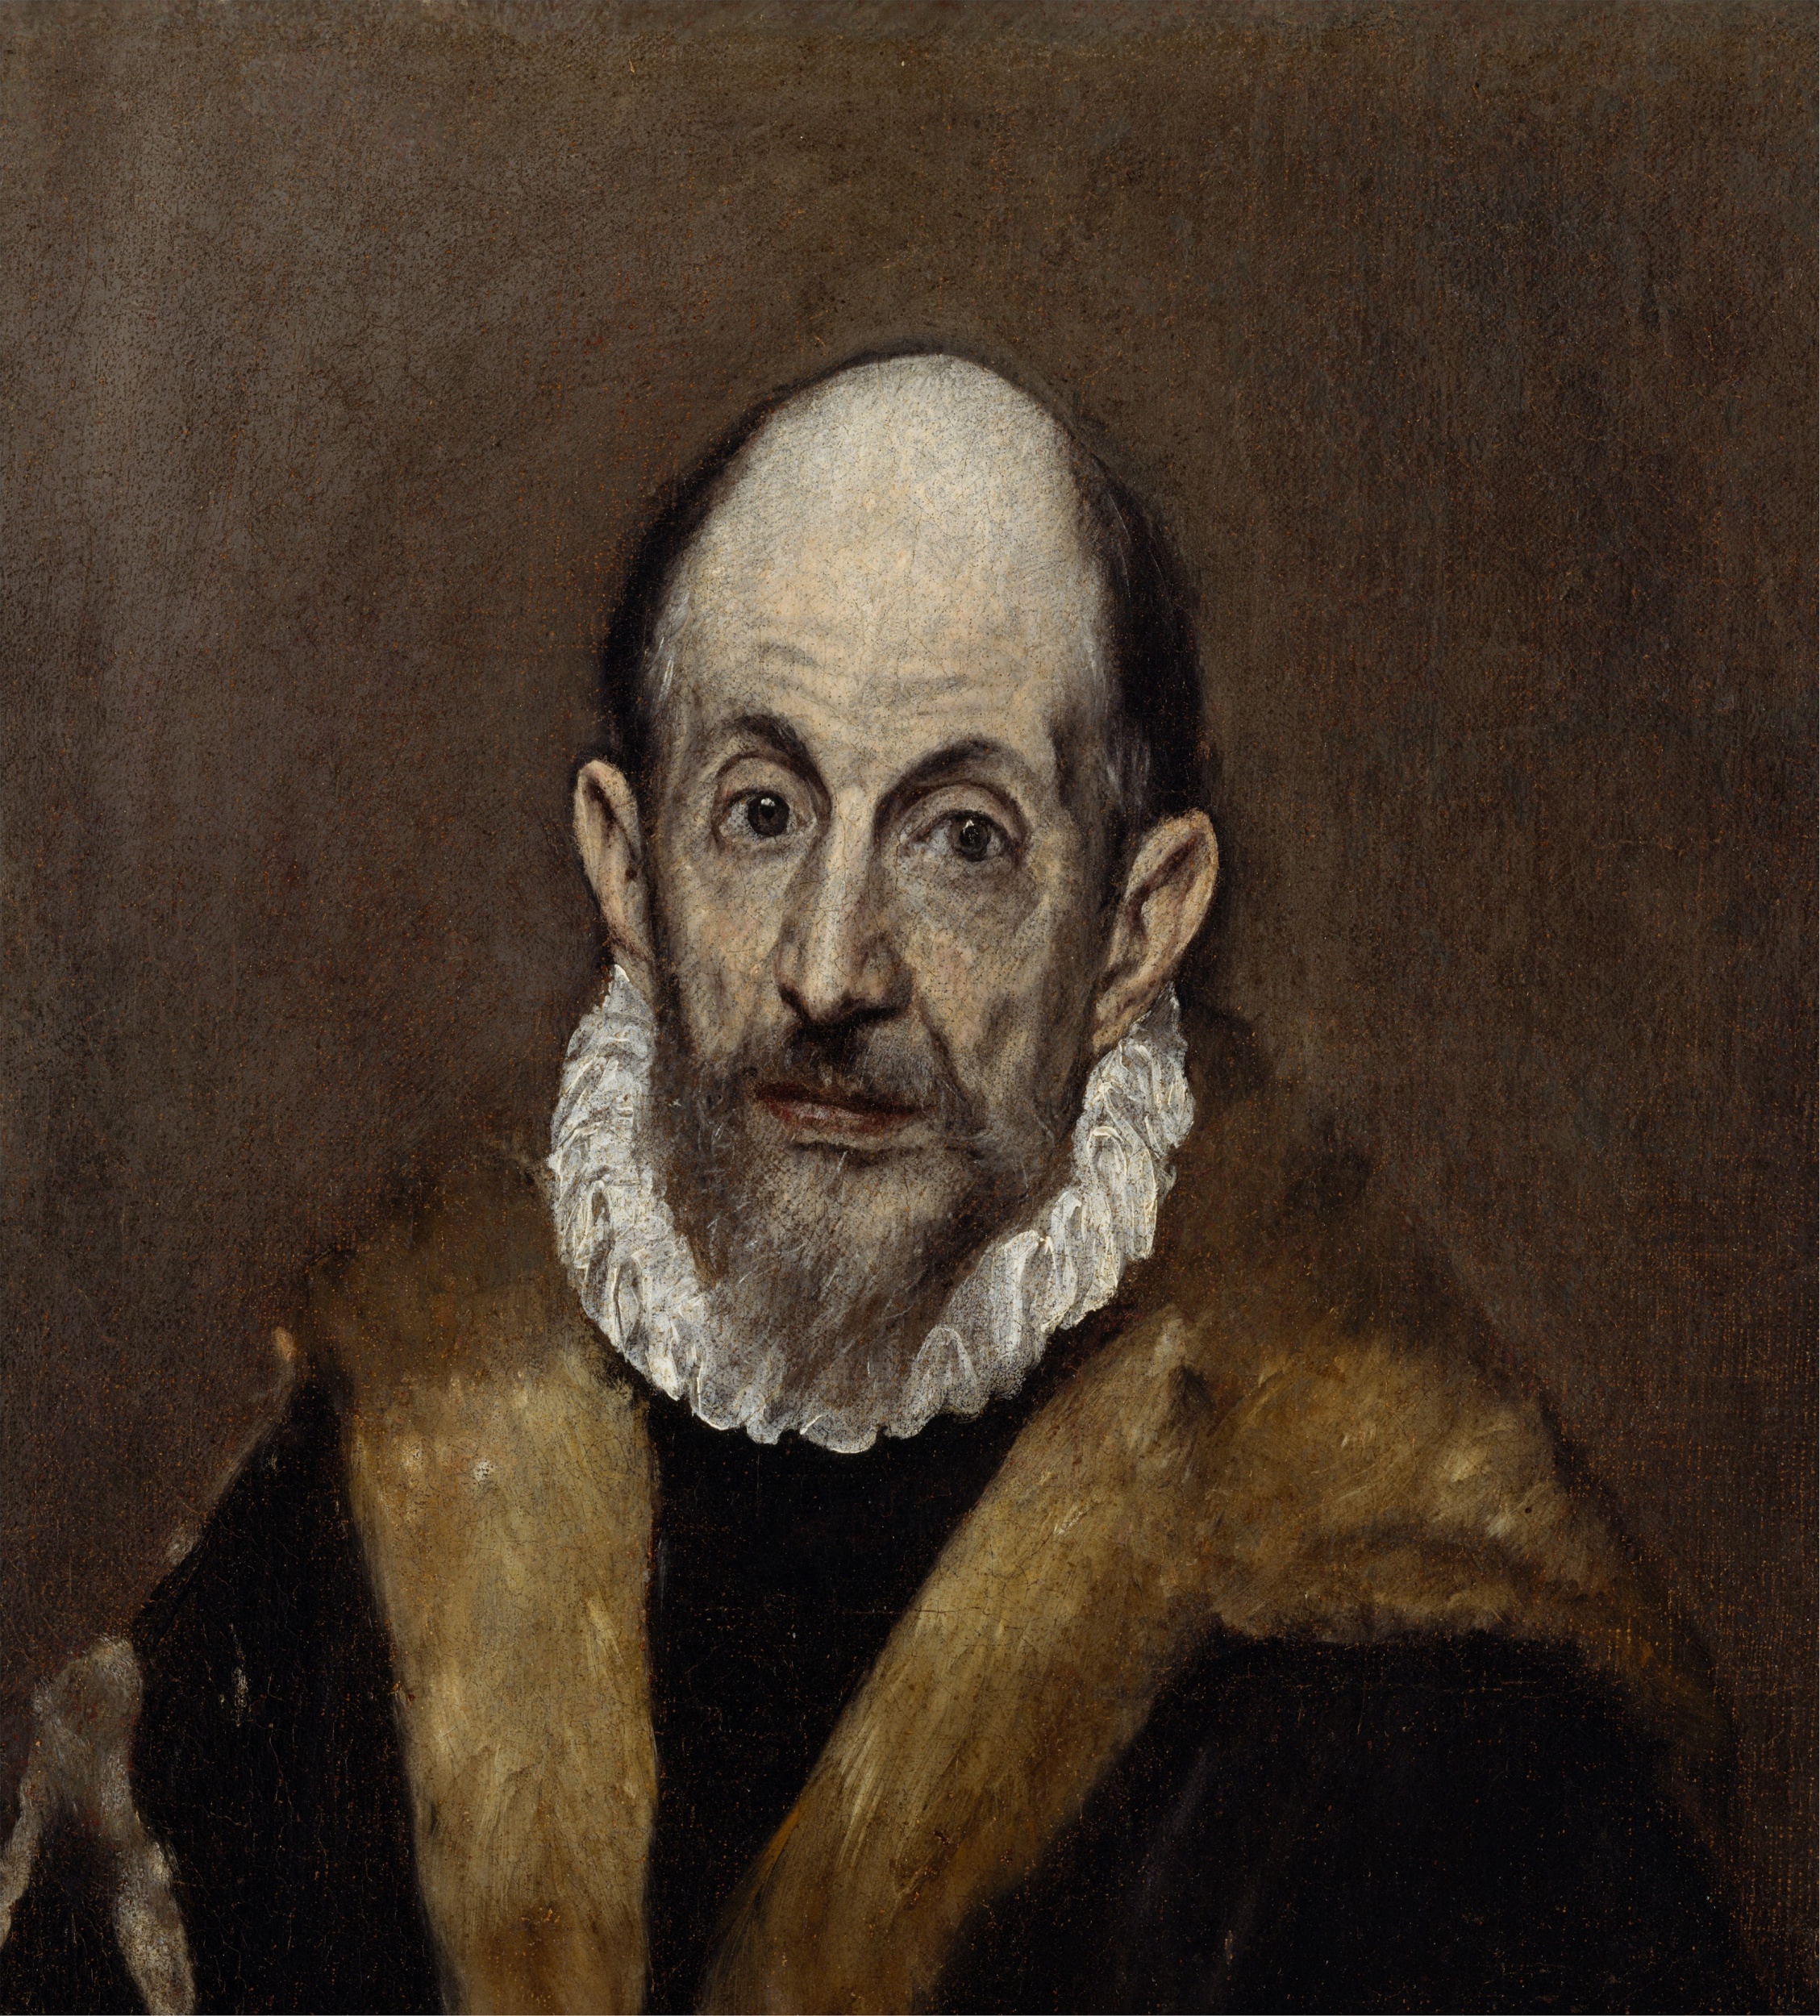 *El Greco, Porträt eines alten Mannes, ca. 1595-1600, The Metropolitain Museum, New York*